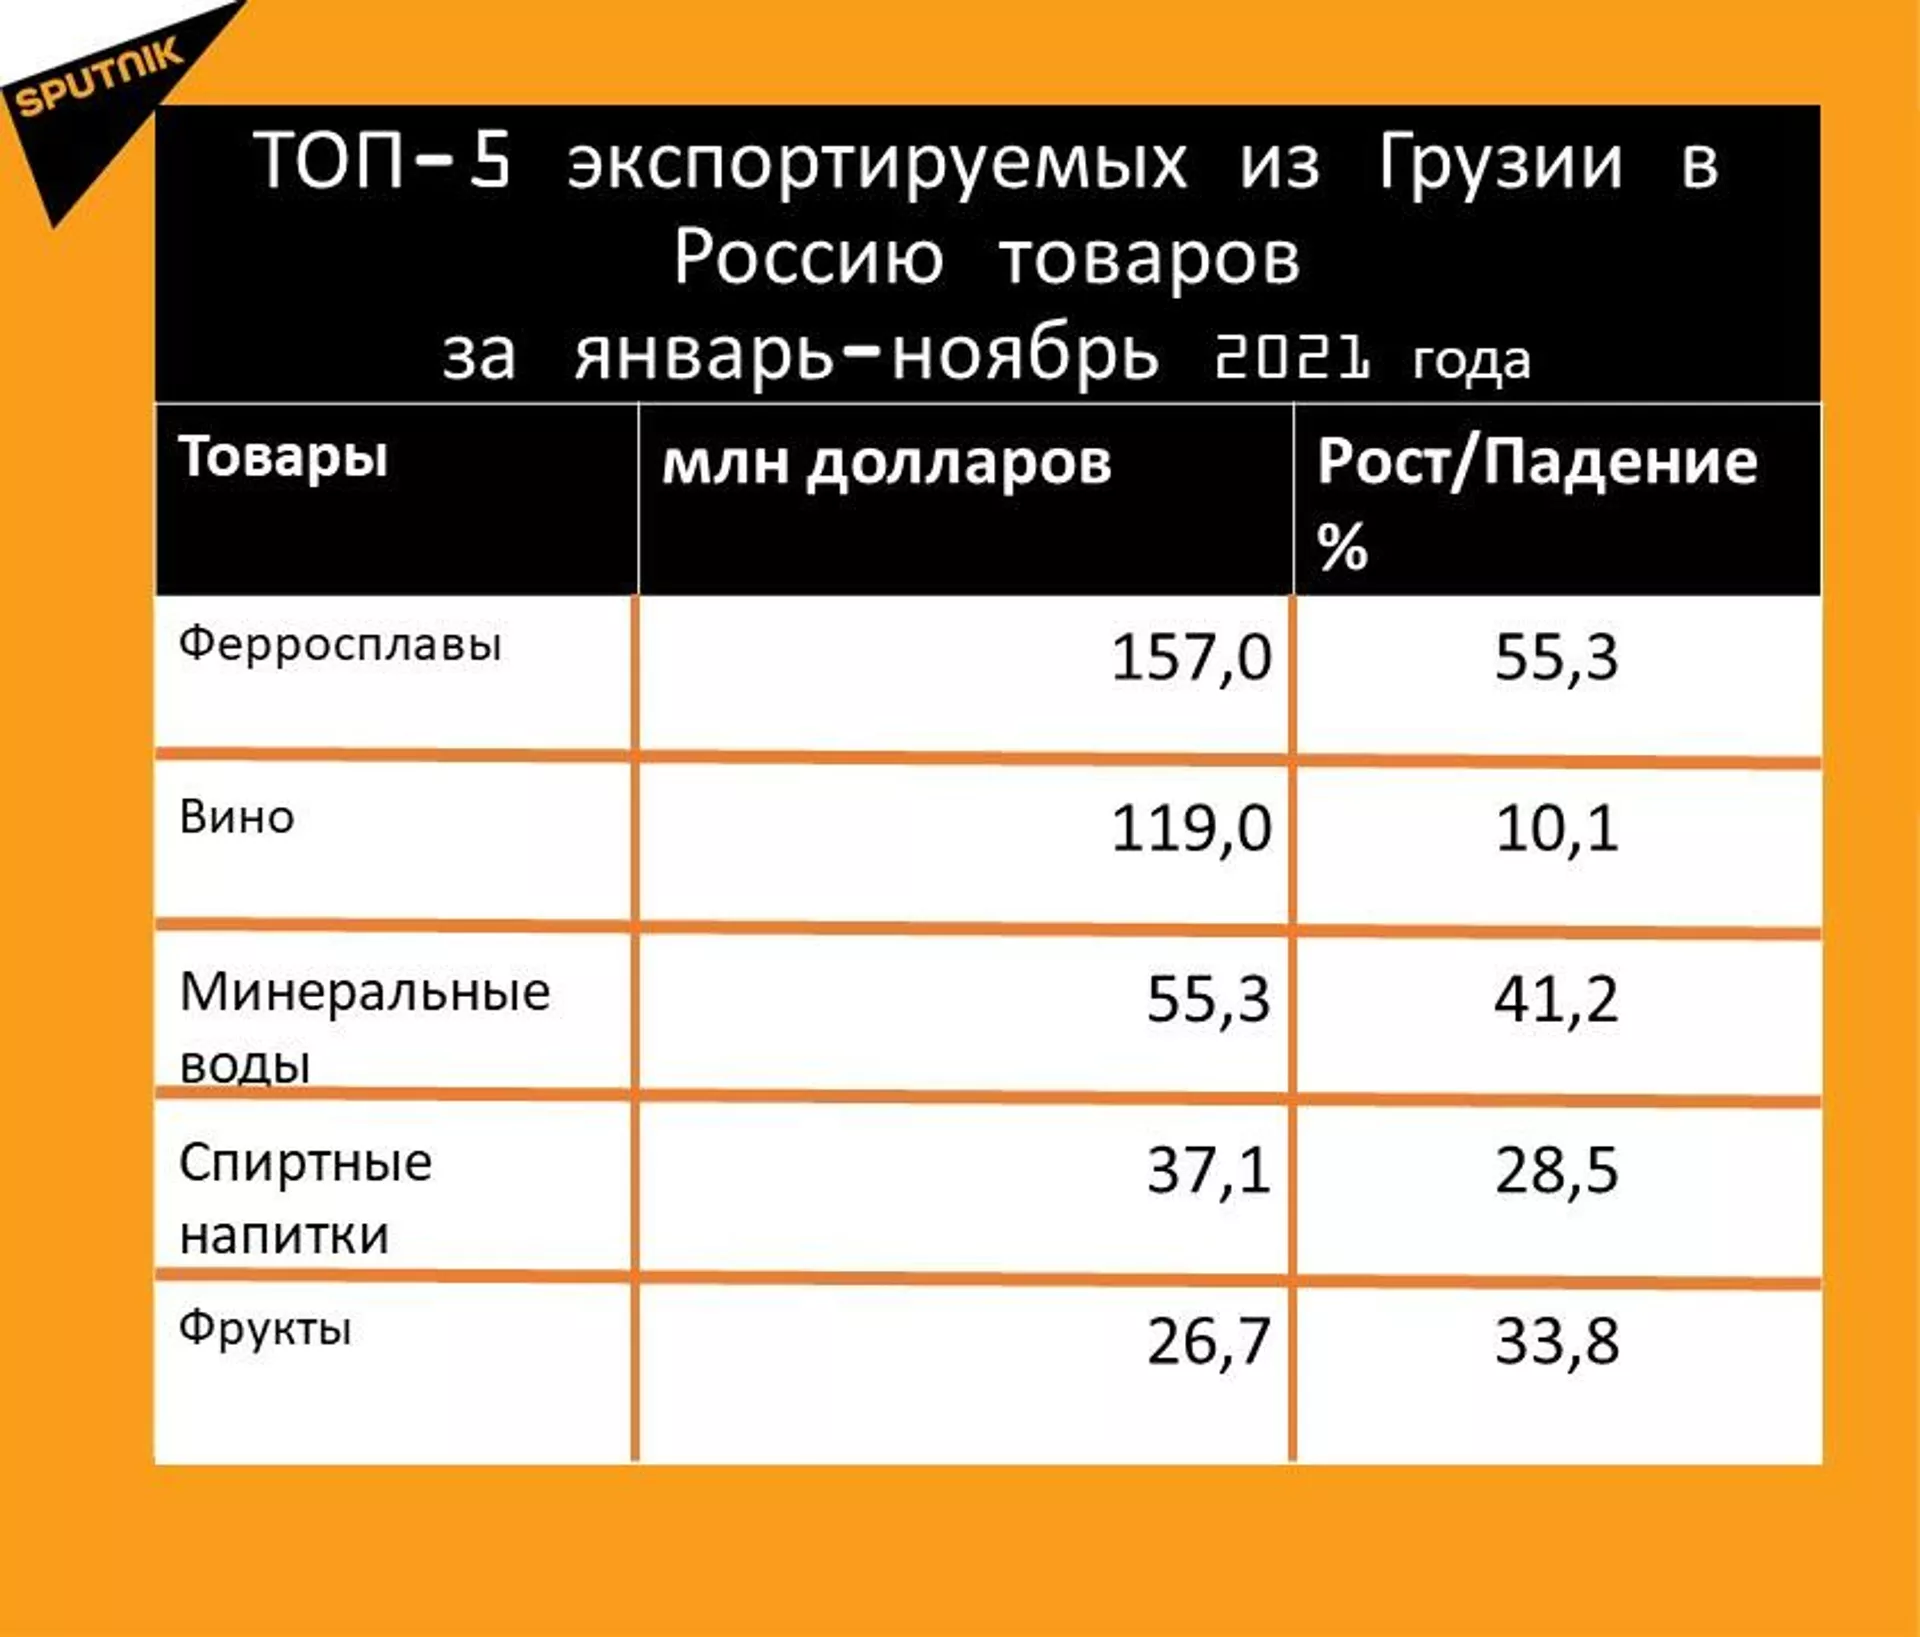 Статистика внешнеторгового оборота Грузии и России за январь-ноябрь 2021 года, экспорт - Sputnik Грузия, 1920, 22.12.2021